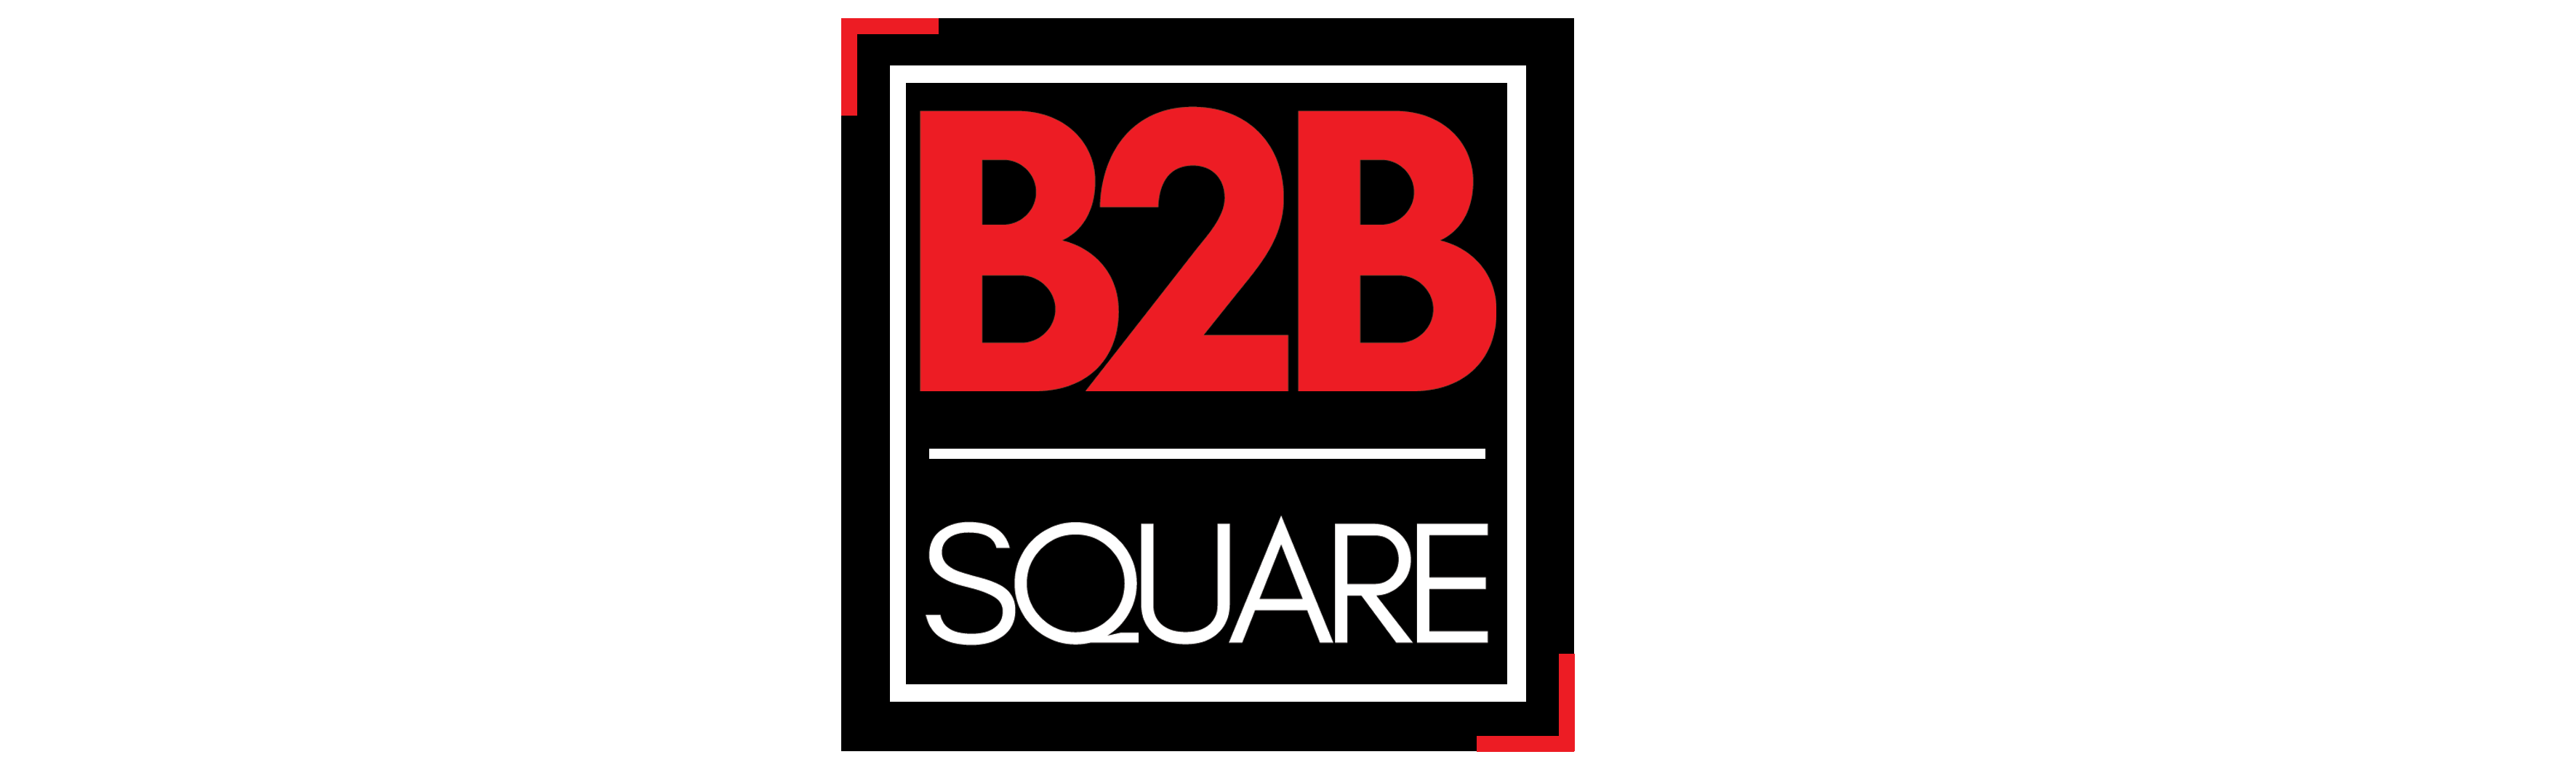 B2B Square